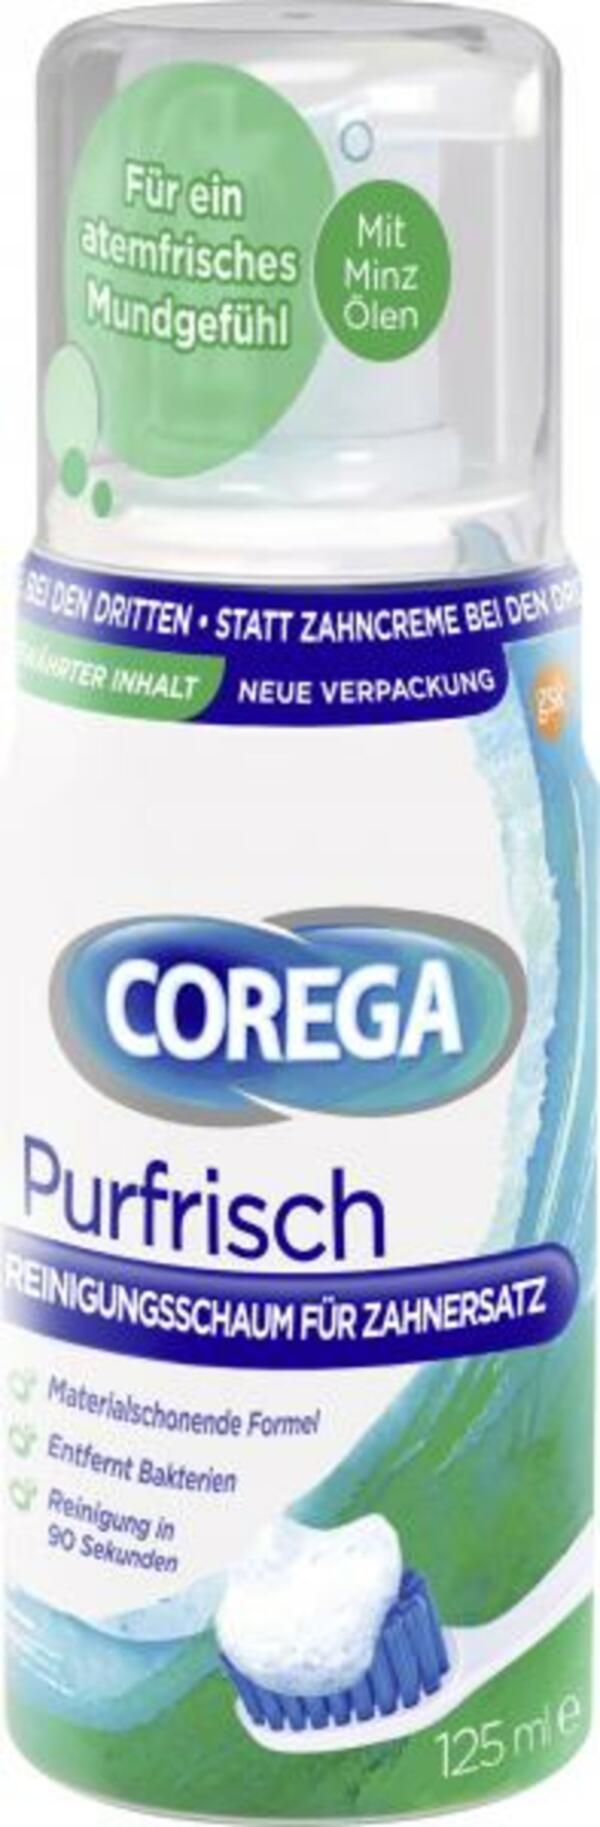 Bild 1 von Corega Purfrisch Reinigungsschaum für Zahnersatz